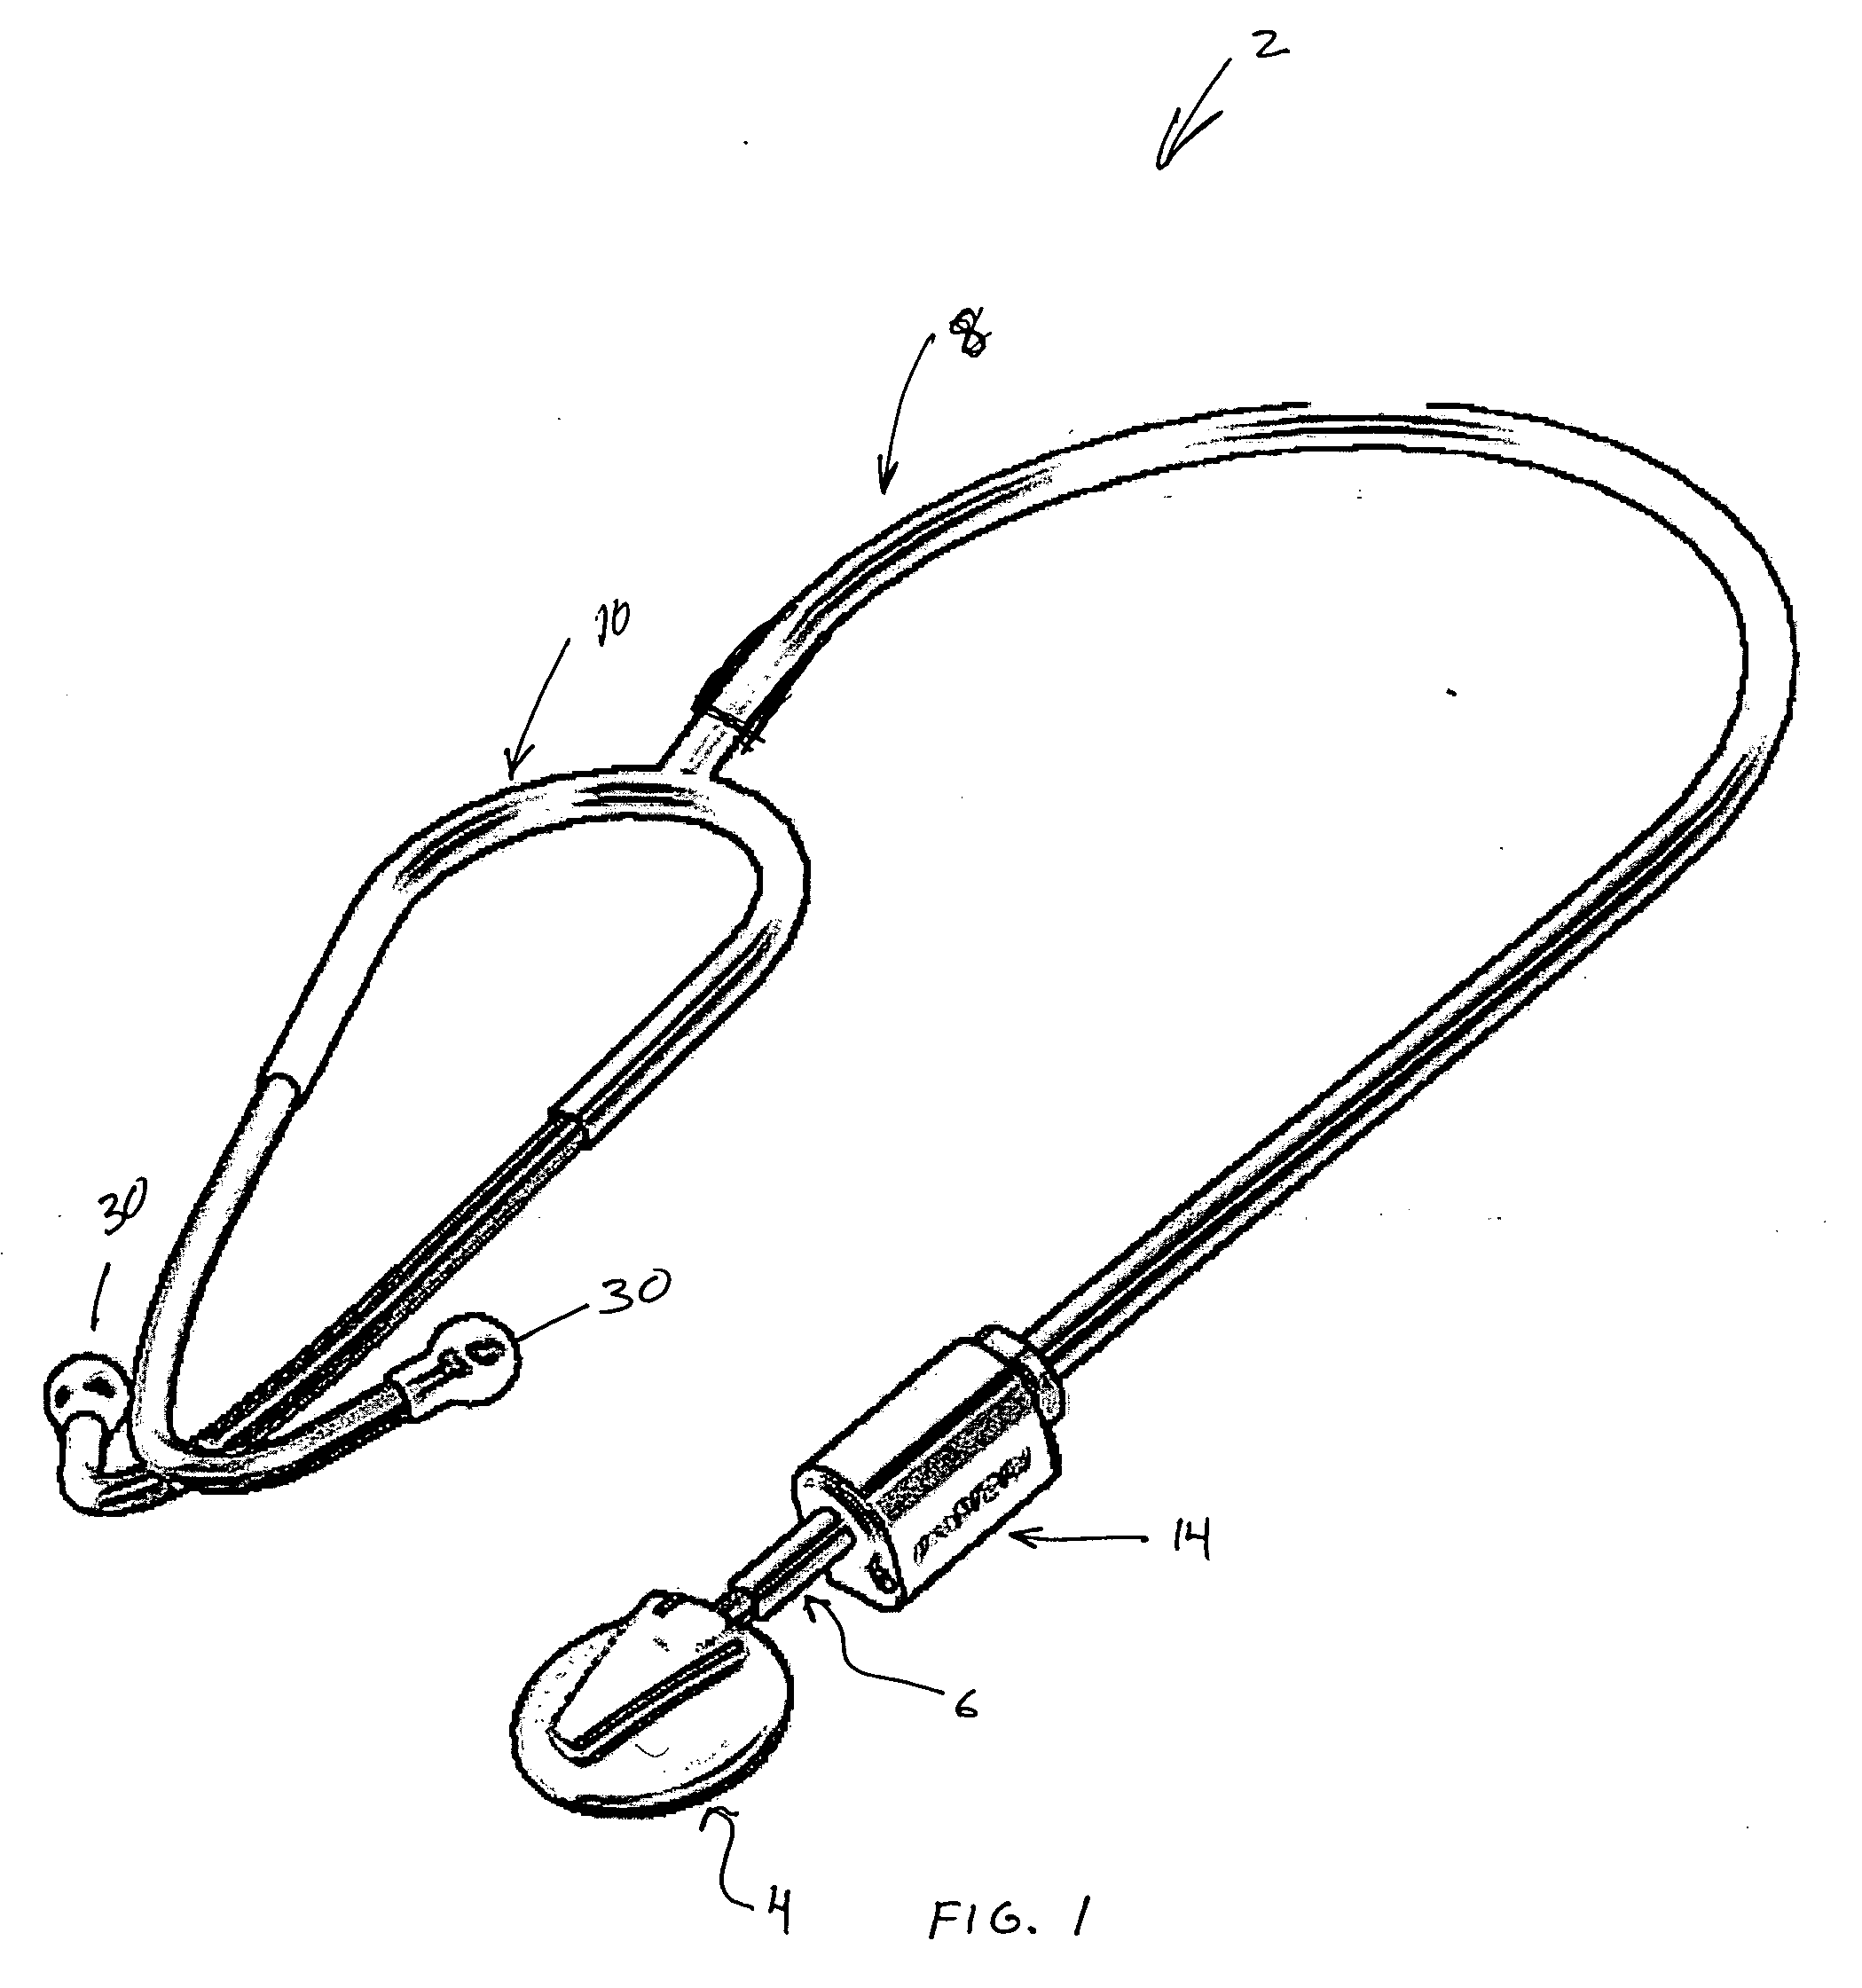 Electronic adaption of acoustical stethoscope